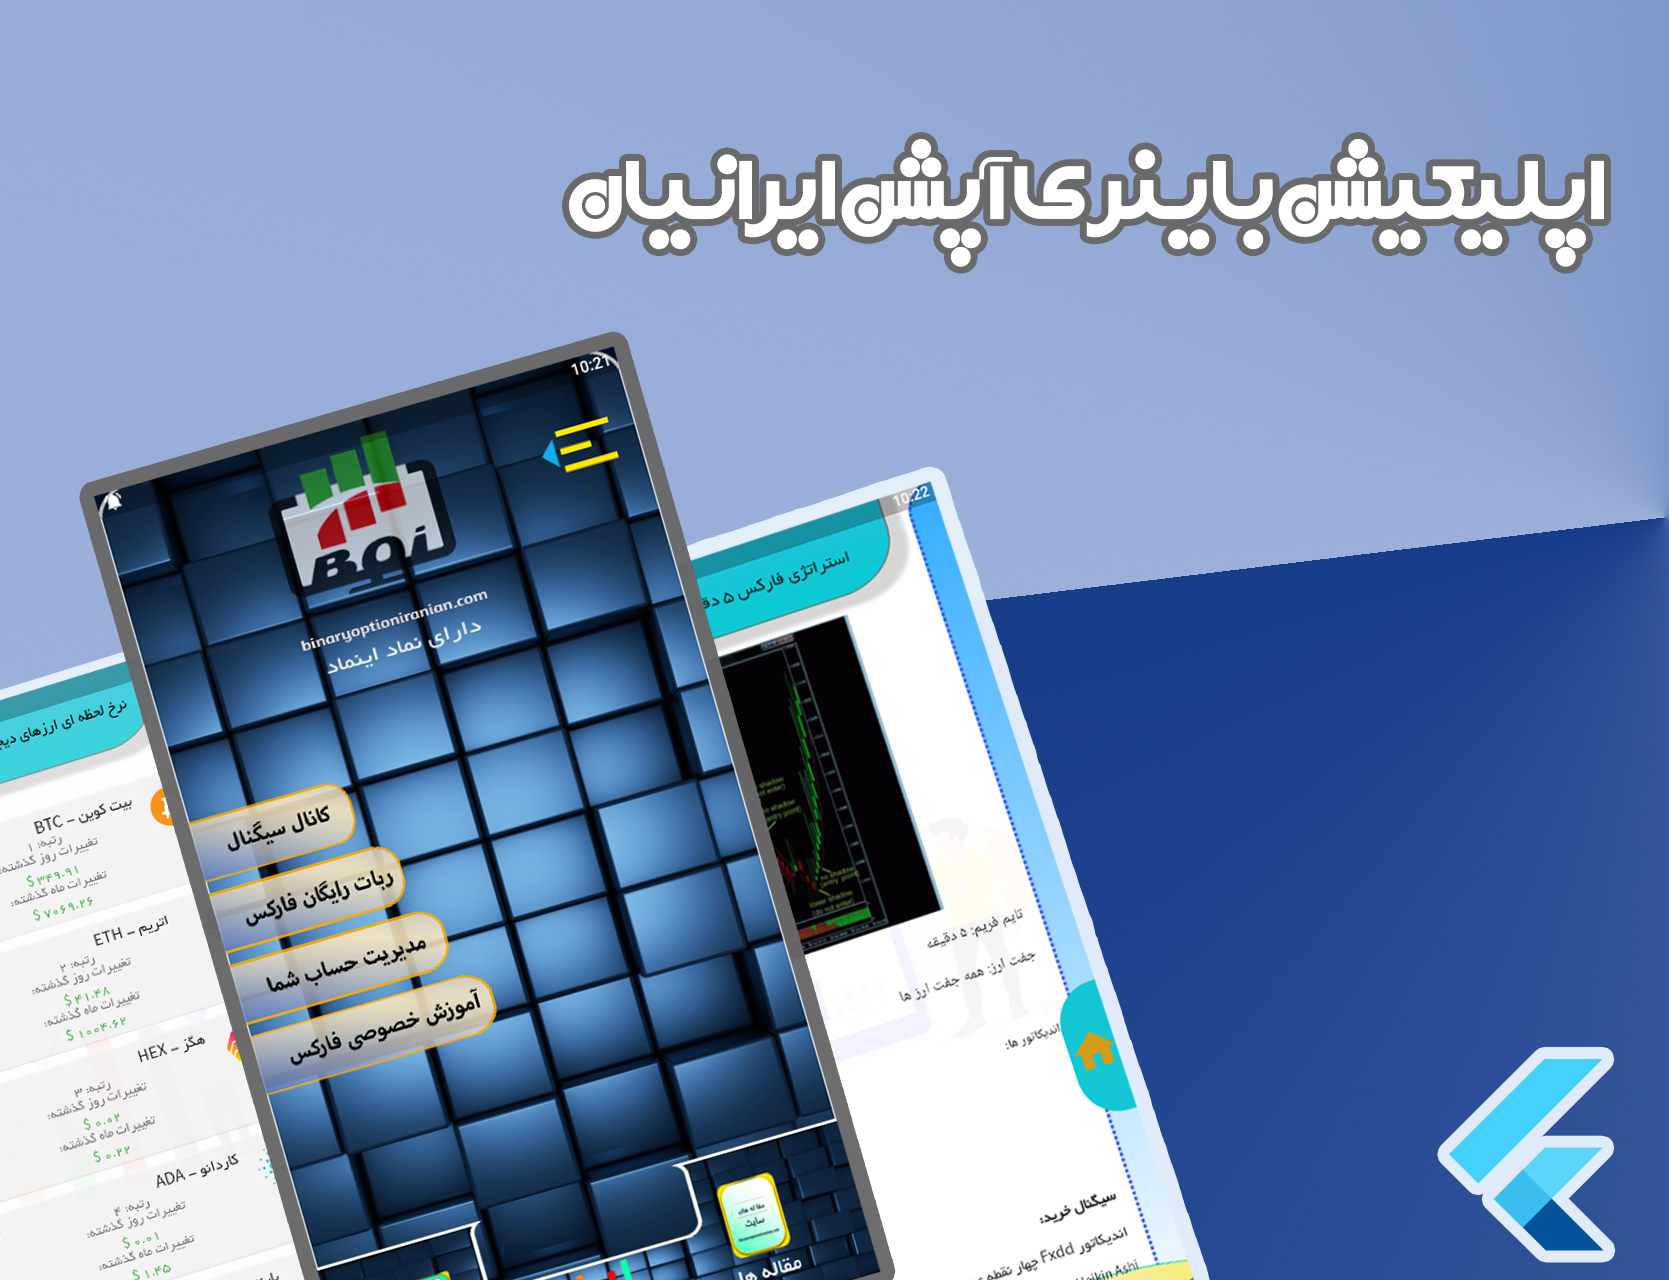 اپلیکیشن باینری آپشن ایرانیان